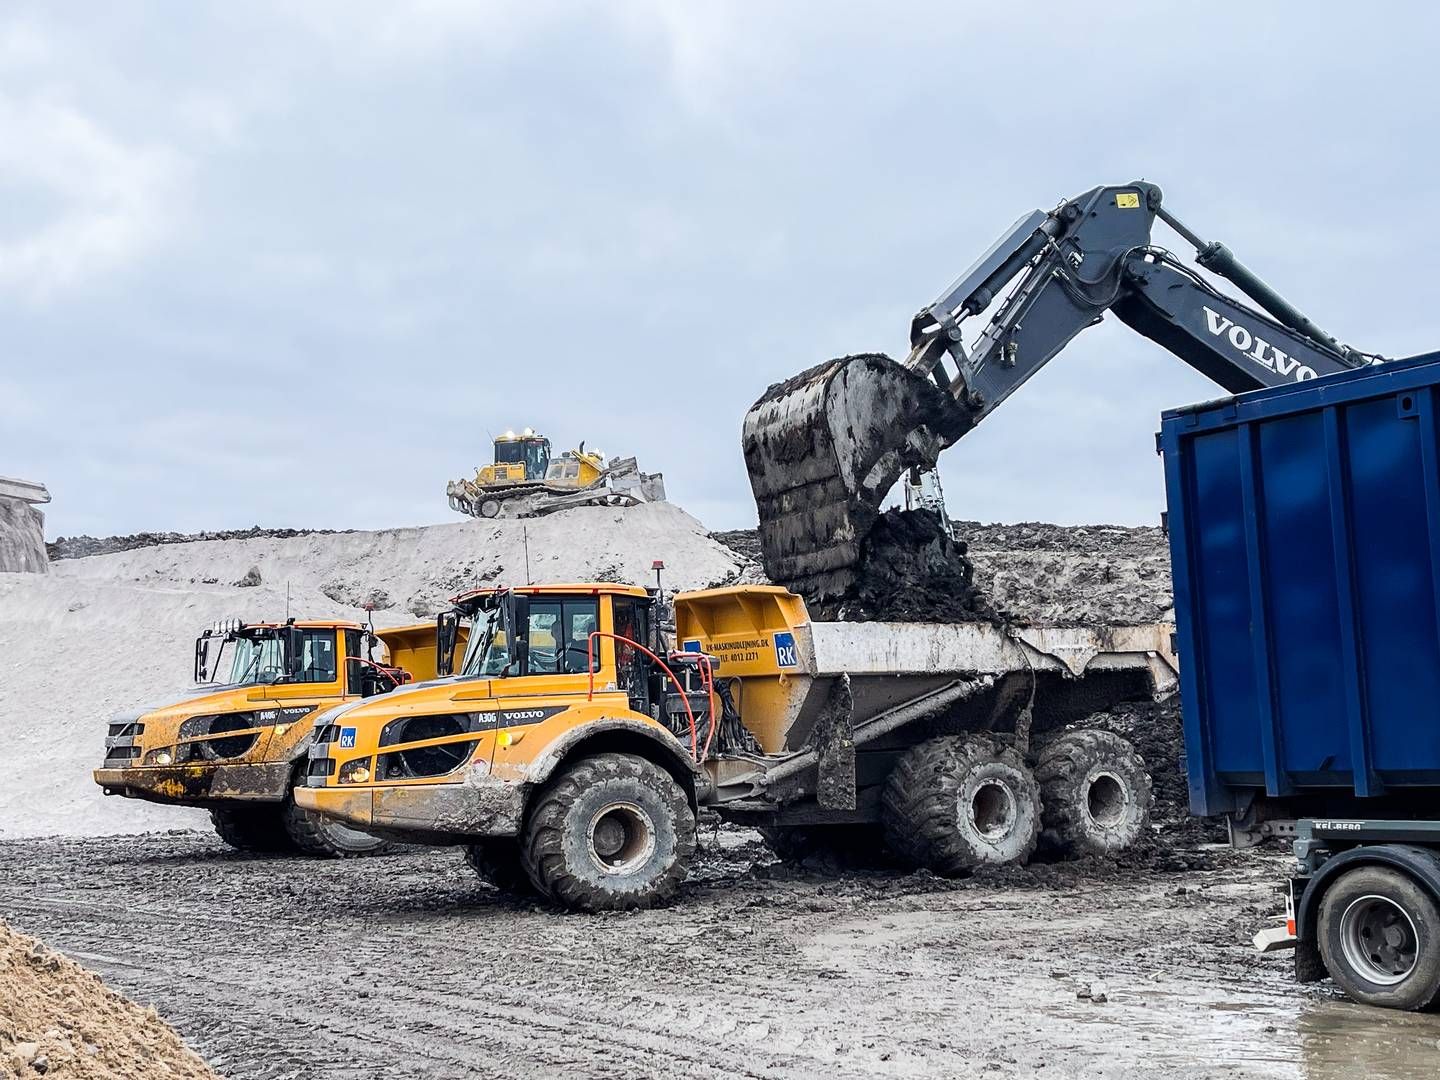 Nordic Waste har siden midten af december været ramt af jordskredet, der har lukket ned for driften af virksomhedens behandlingsanlæg til rensning af forurenet jord. | Foto: Nordic Waste / Mikkel Wenzel Andreasen